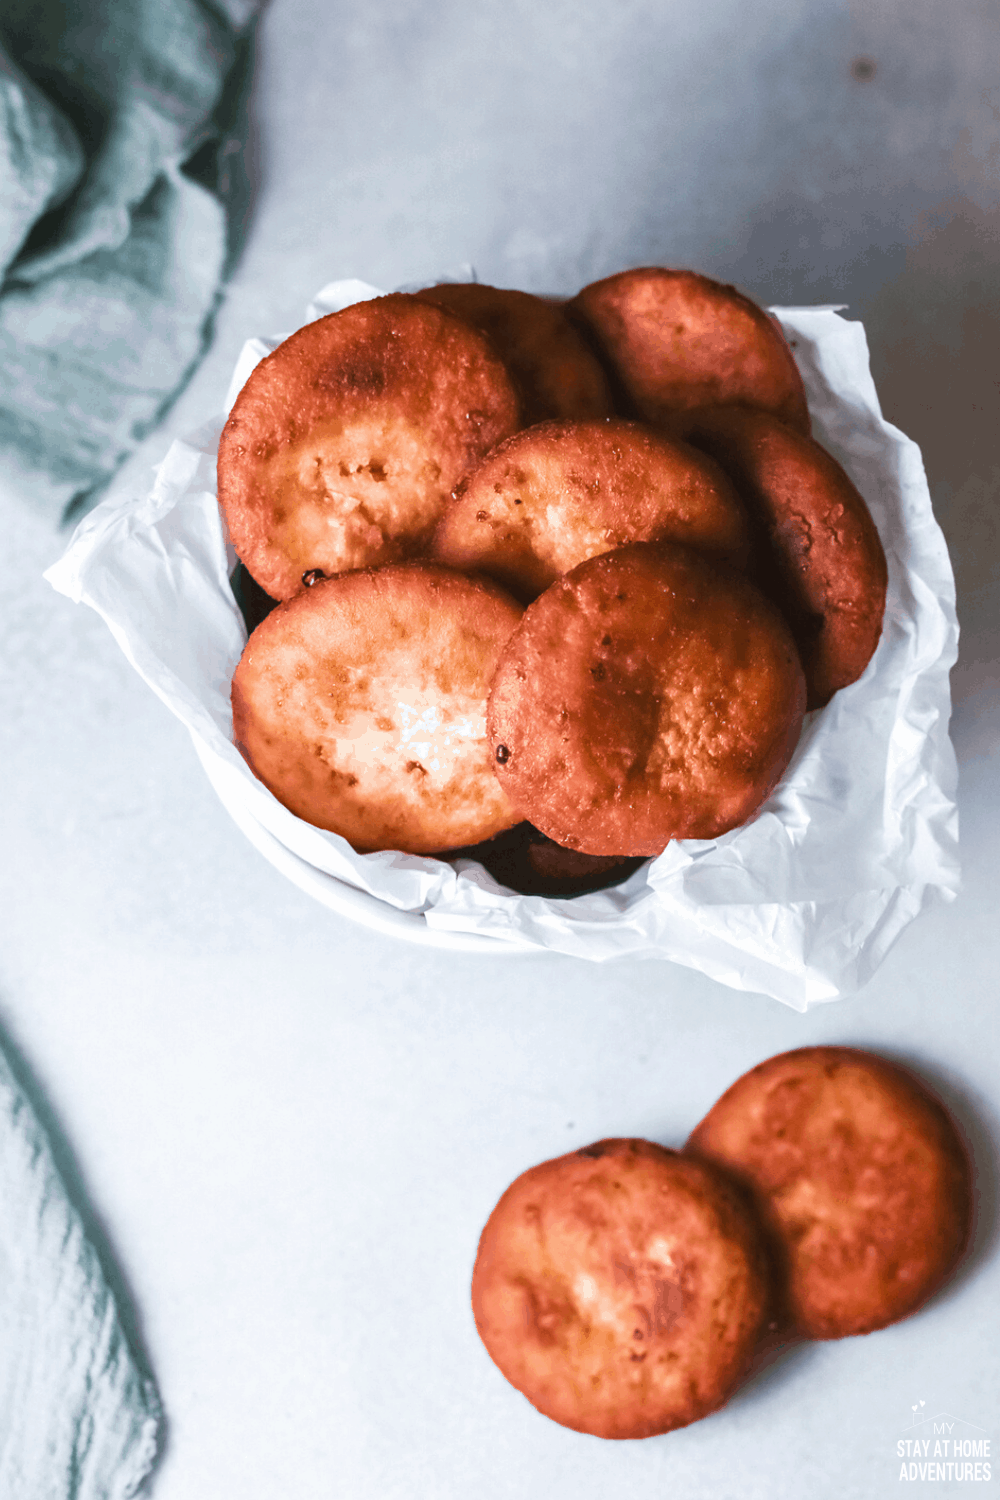 This Arepas de Coco Recipe (Puerto Rican coconut fry bread) contains cinnamon, coconut milk, brown sugar and is fried to perfection. via @mystayathome